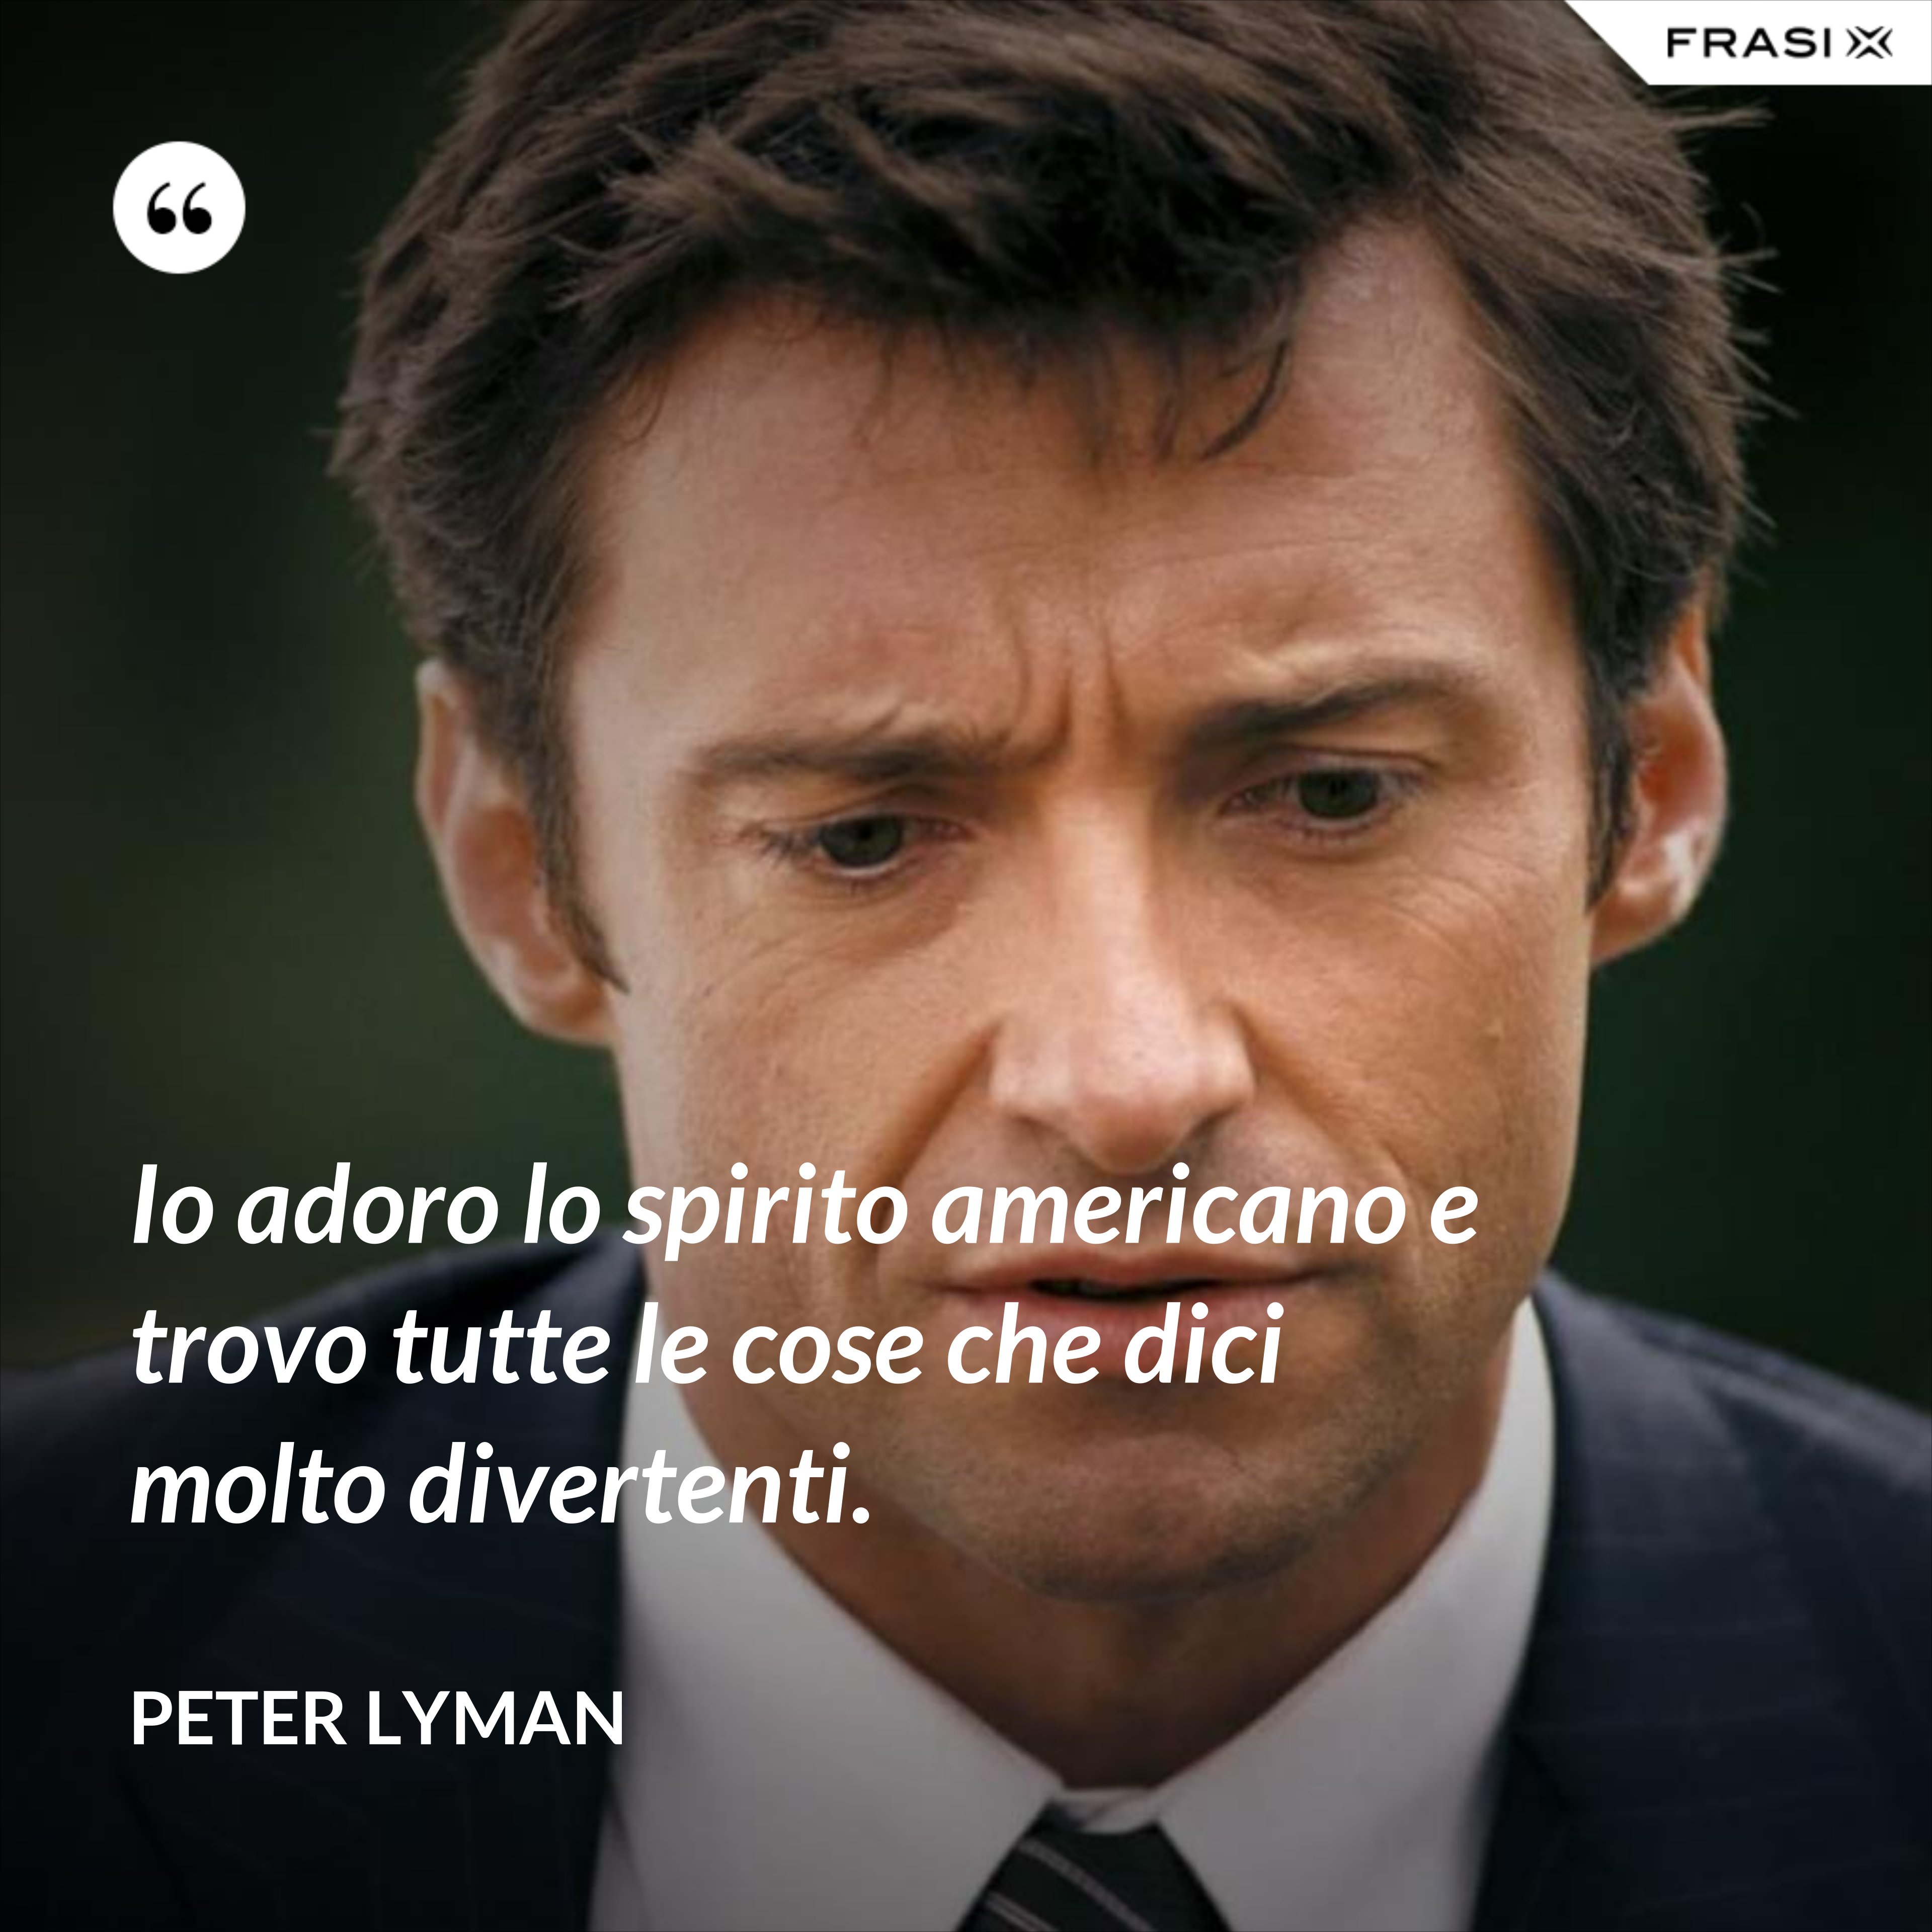 Io adoro lo spirito americano e trovo tutte le cose che dici molto divertenti. - Peter Lyman